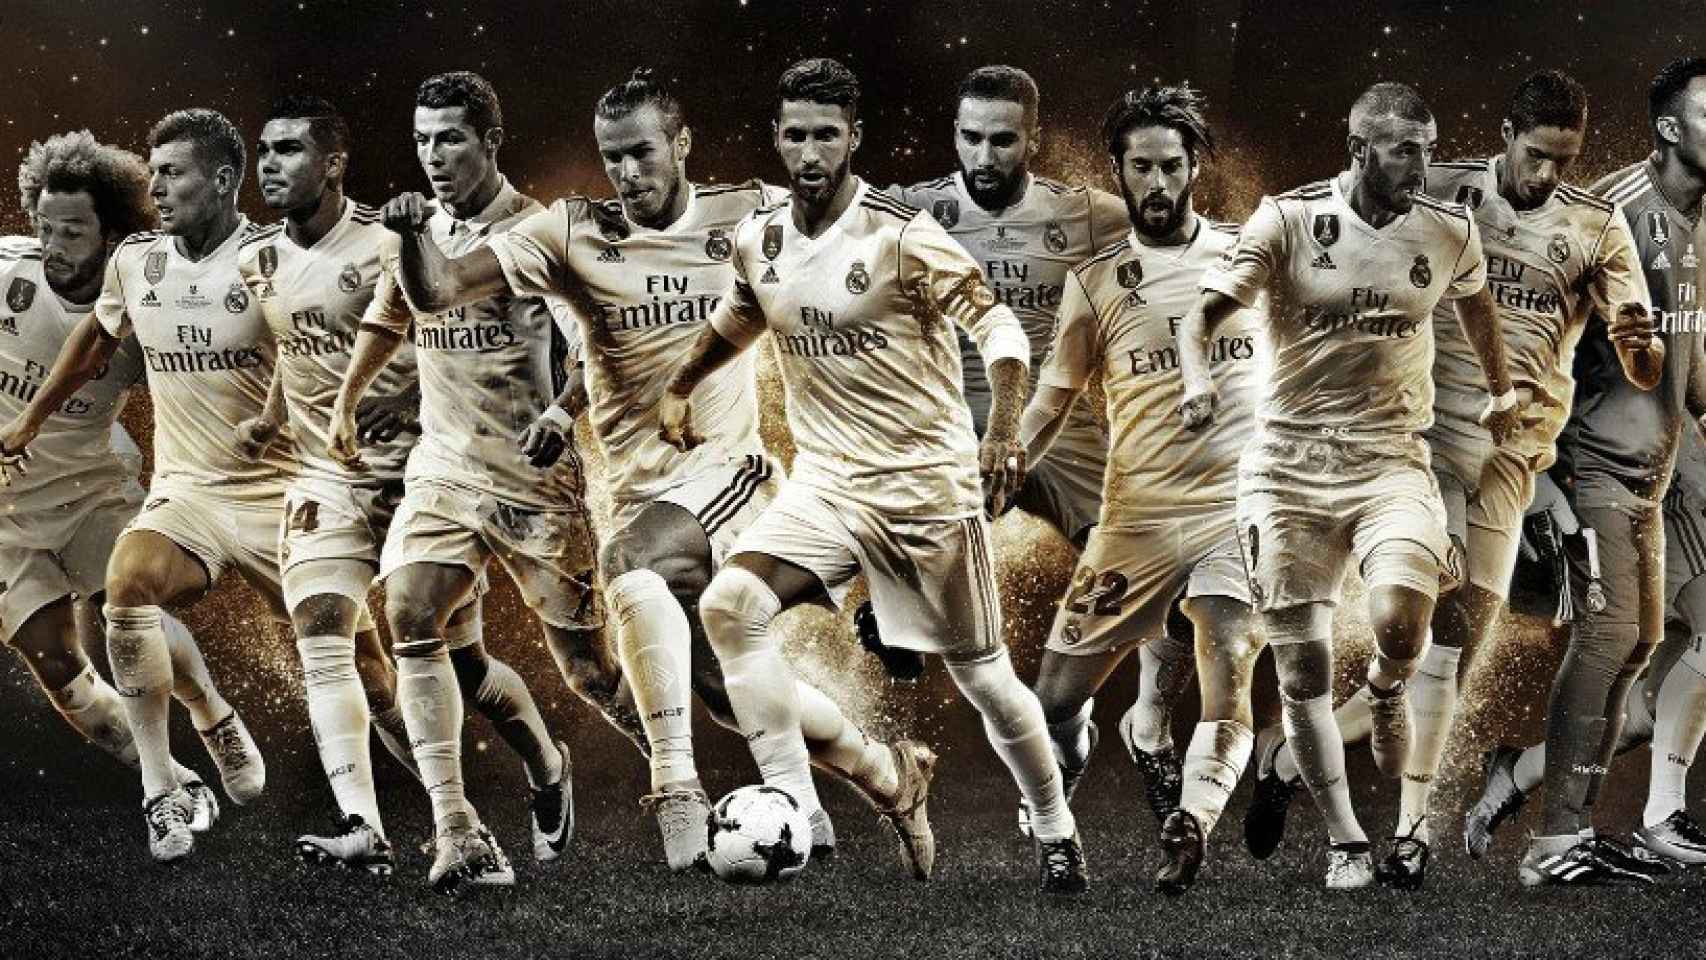 Los jugadores del Real Madrid elegidos para el equipo ideal del FIFpro. Foto: (fifpro.org)